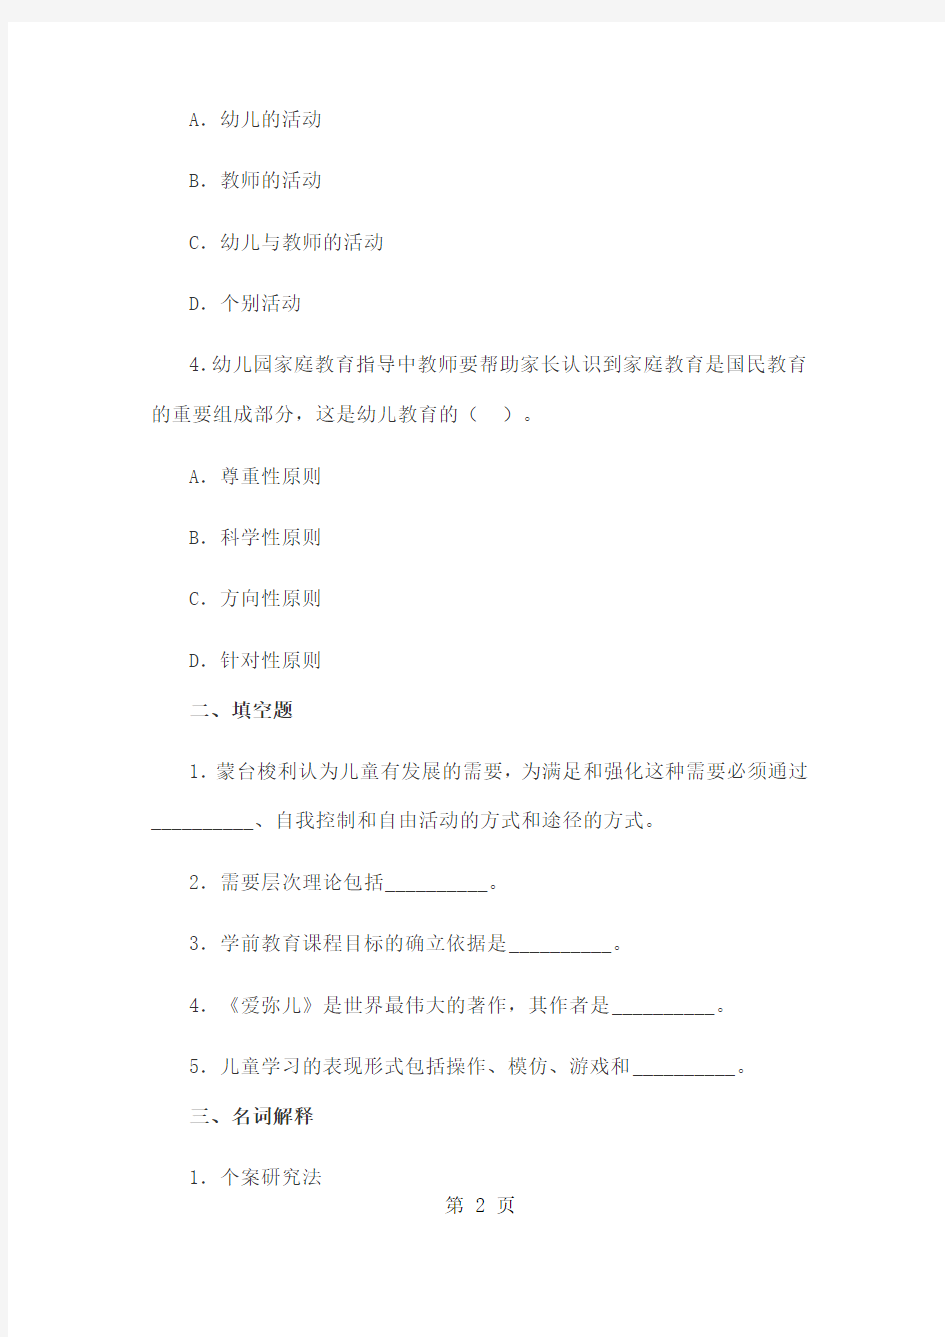 2019年北京市教师资格证考试备考真题15页